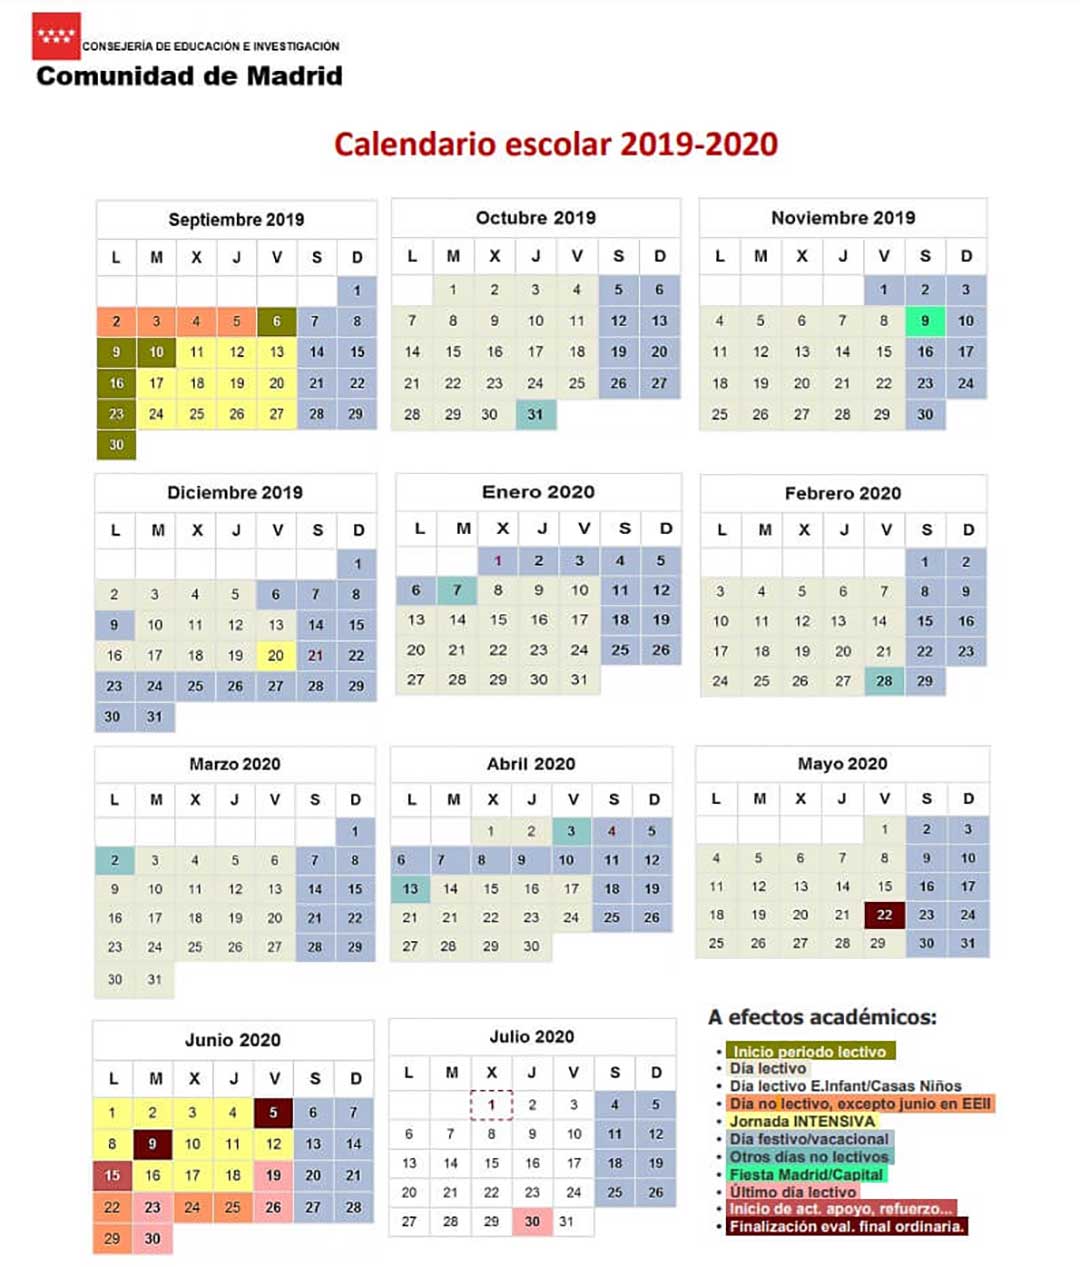 Calendario escolar Madrid para el curso 2020-2021